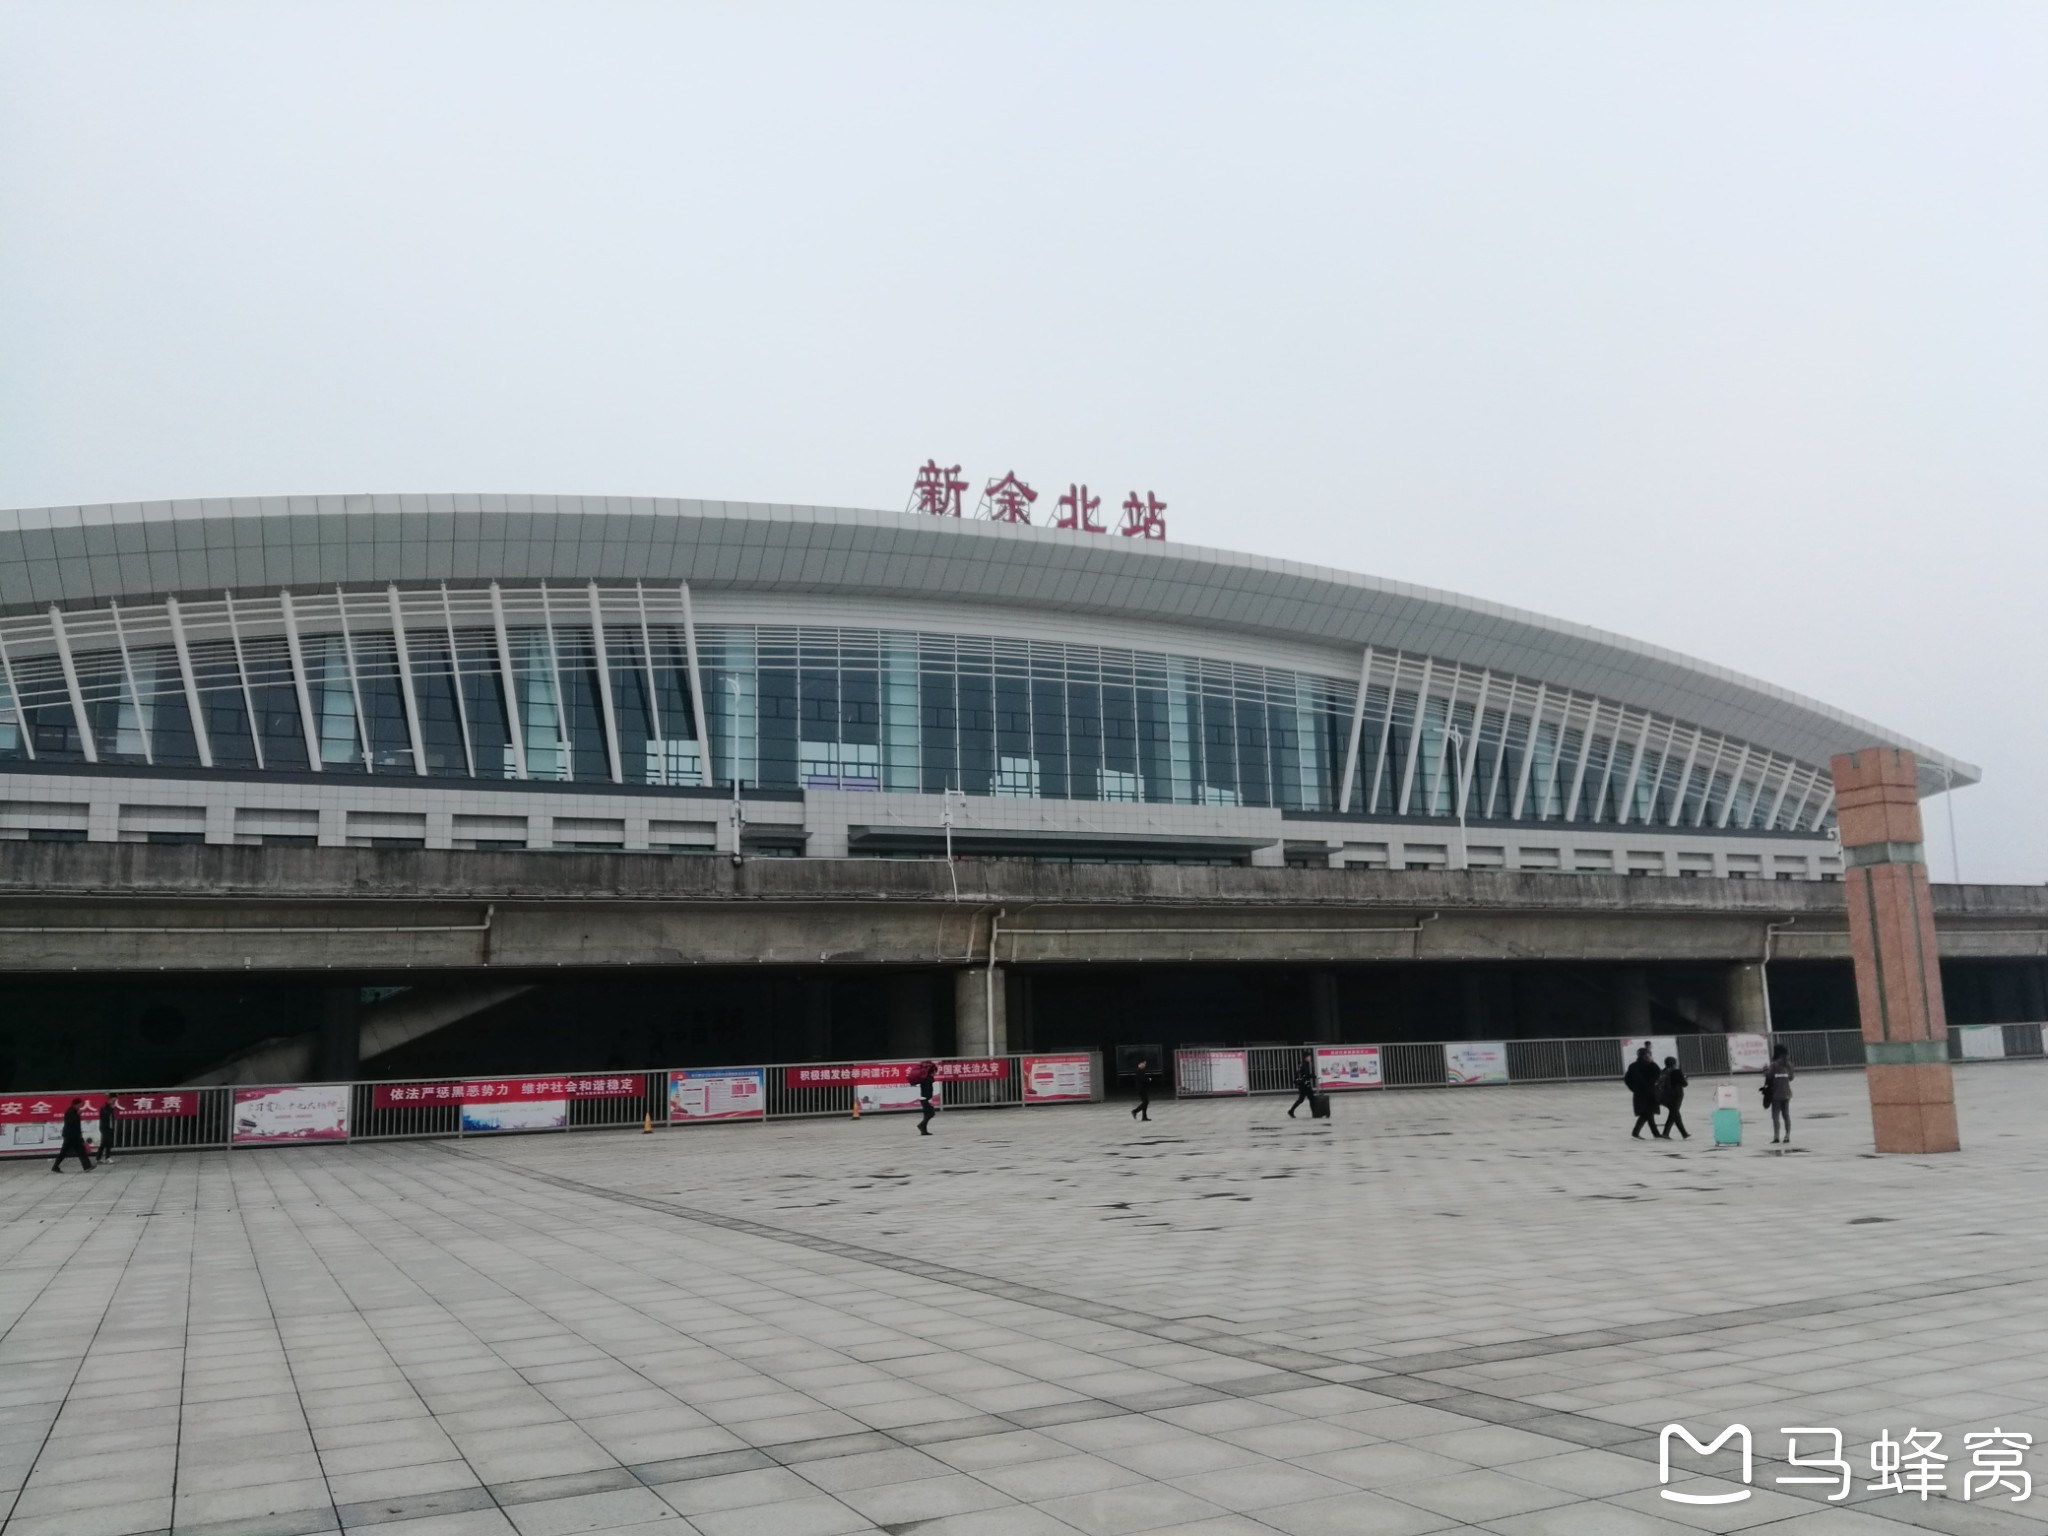 2019年4月14日—上海往返江西新余—高铁上拍美景